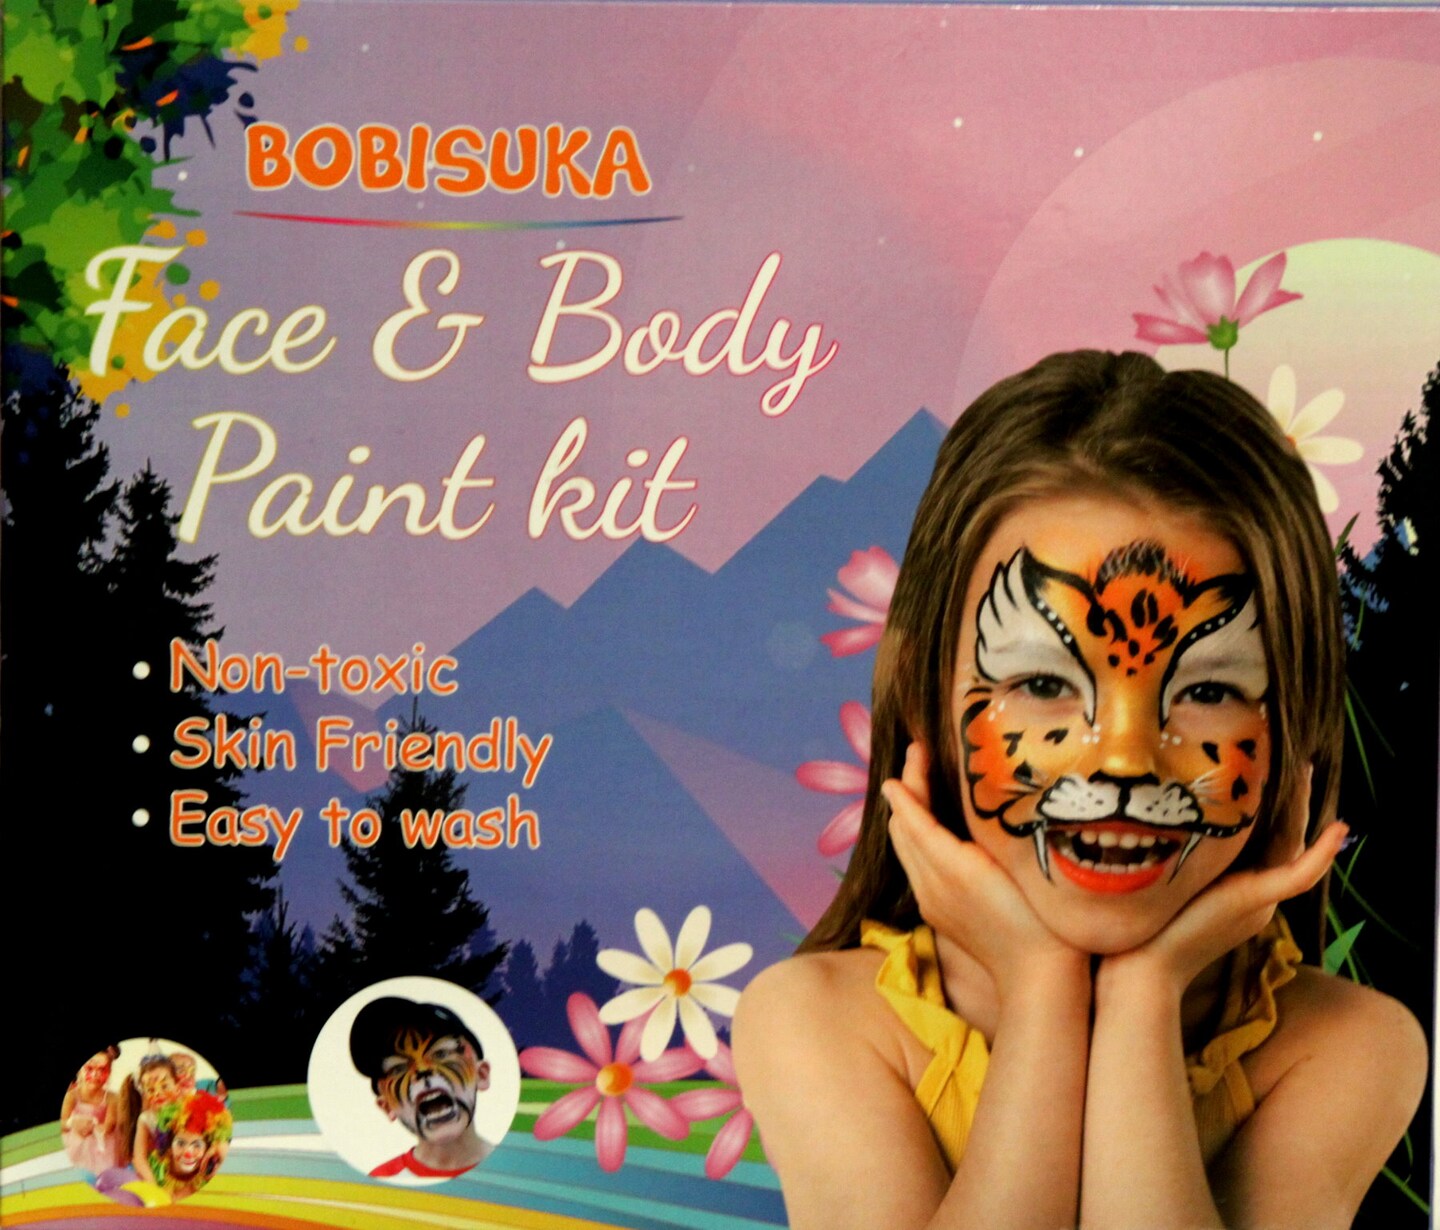 FACE & BODY PAINT Face Paint Sets & Kits